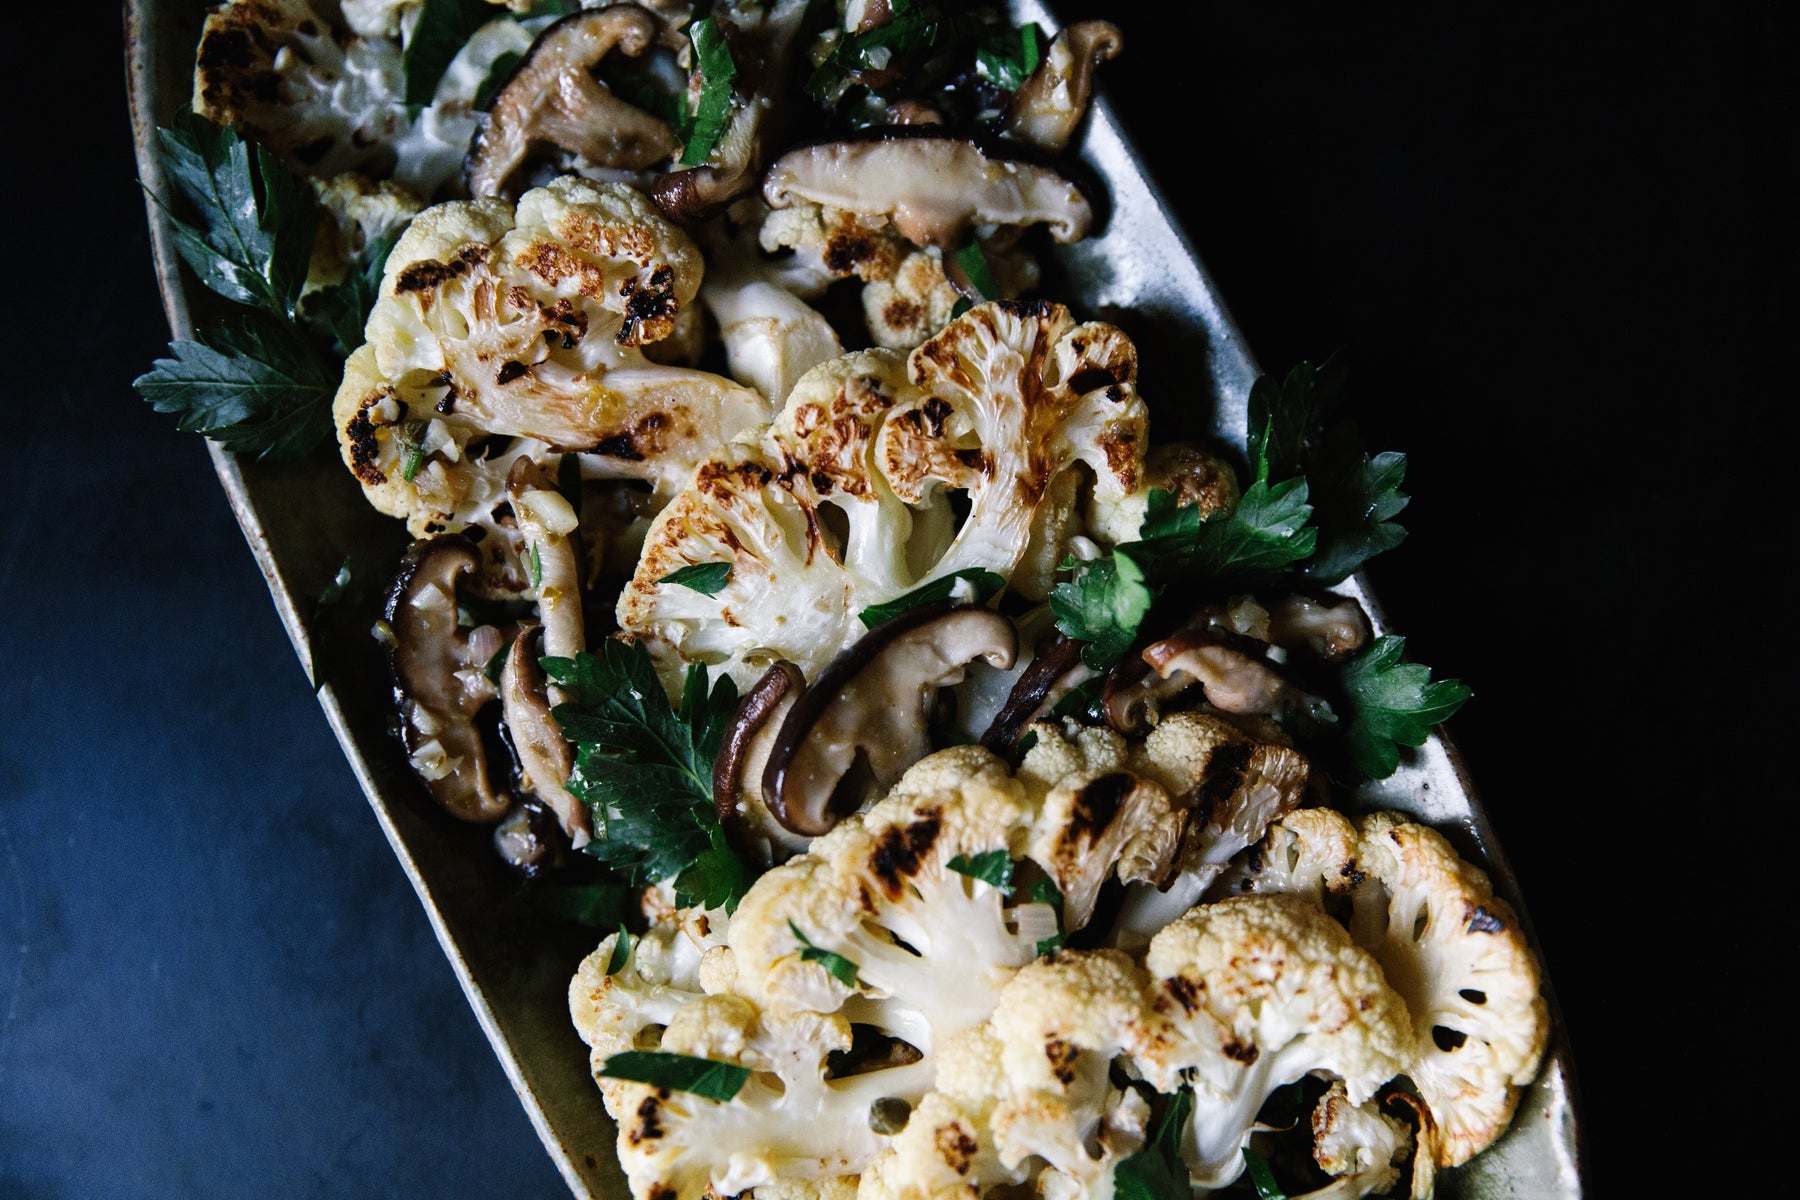 Cauliflower Steak with Roasted Mushrooms